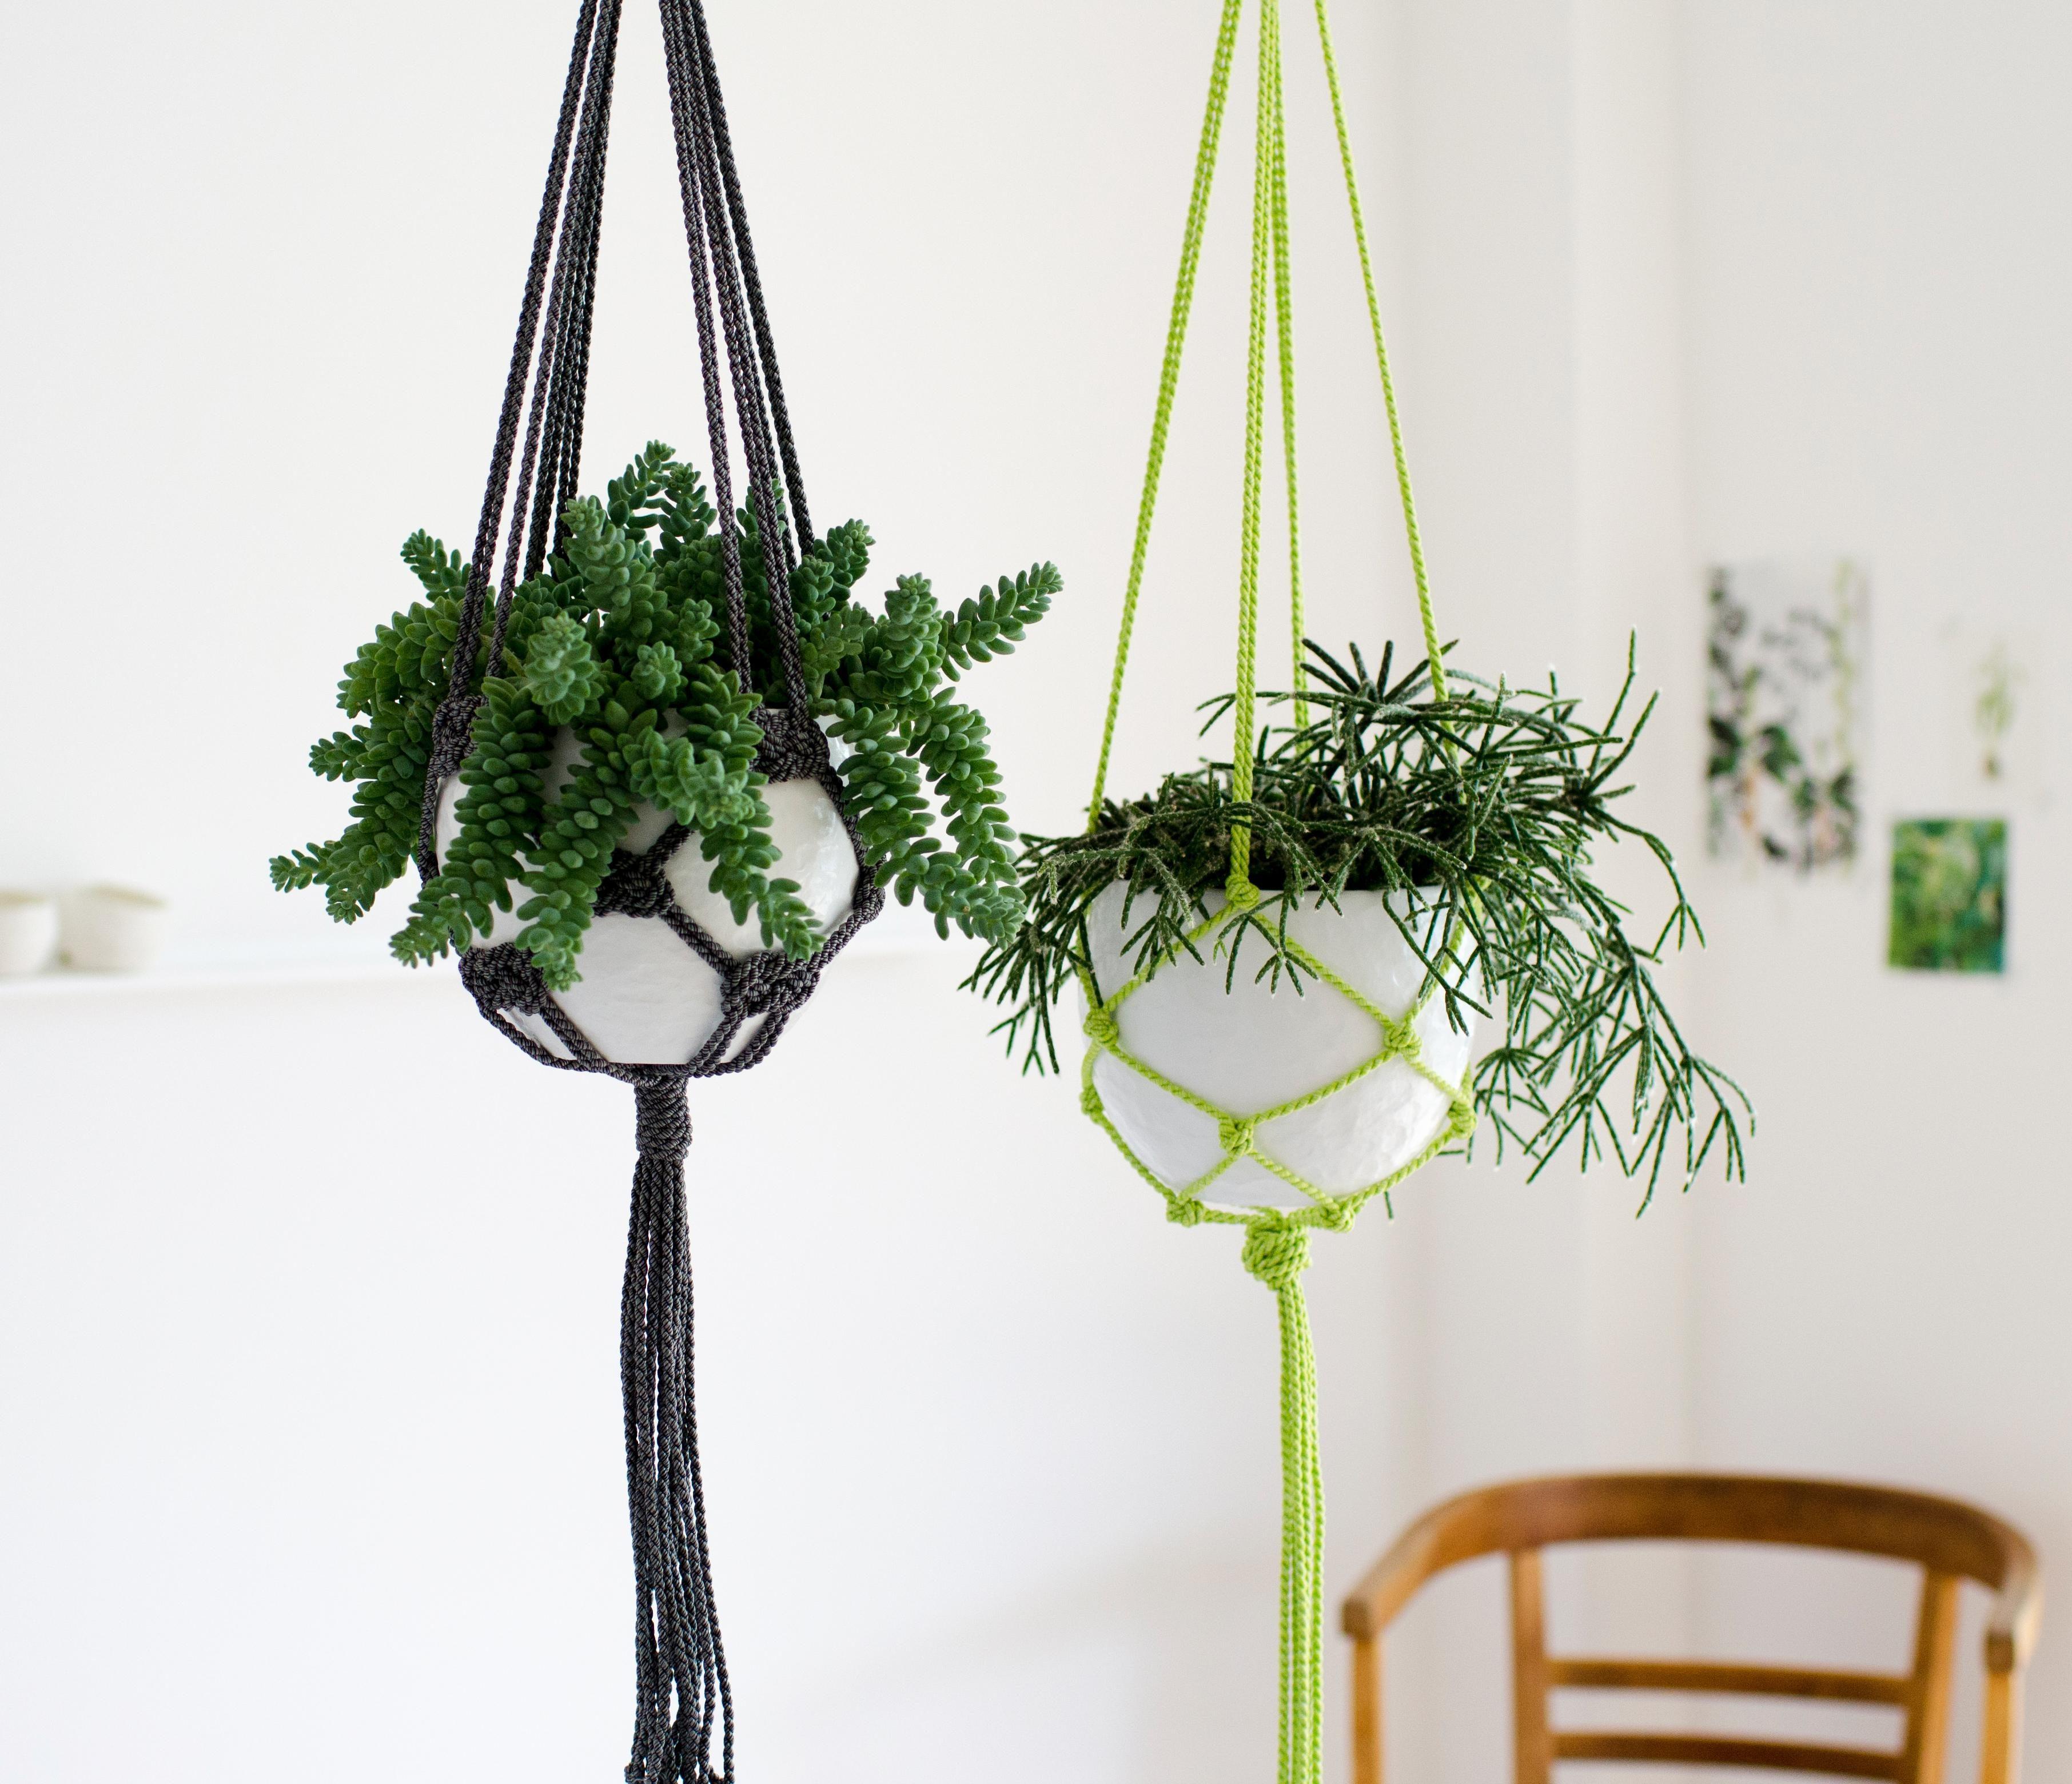 Für entspannt abhängende Pflanzen: #makramee Blumenampeln #DIYweek #DIYdeko #urbanjungle #diy #sukkulenten